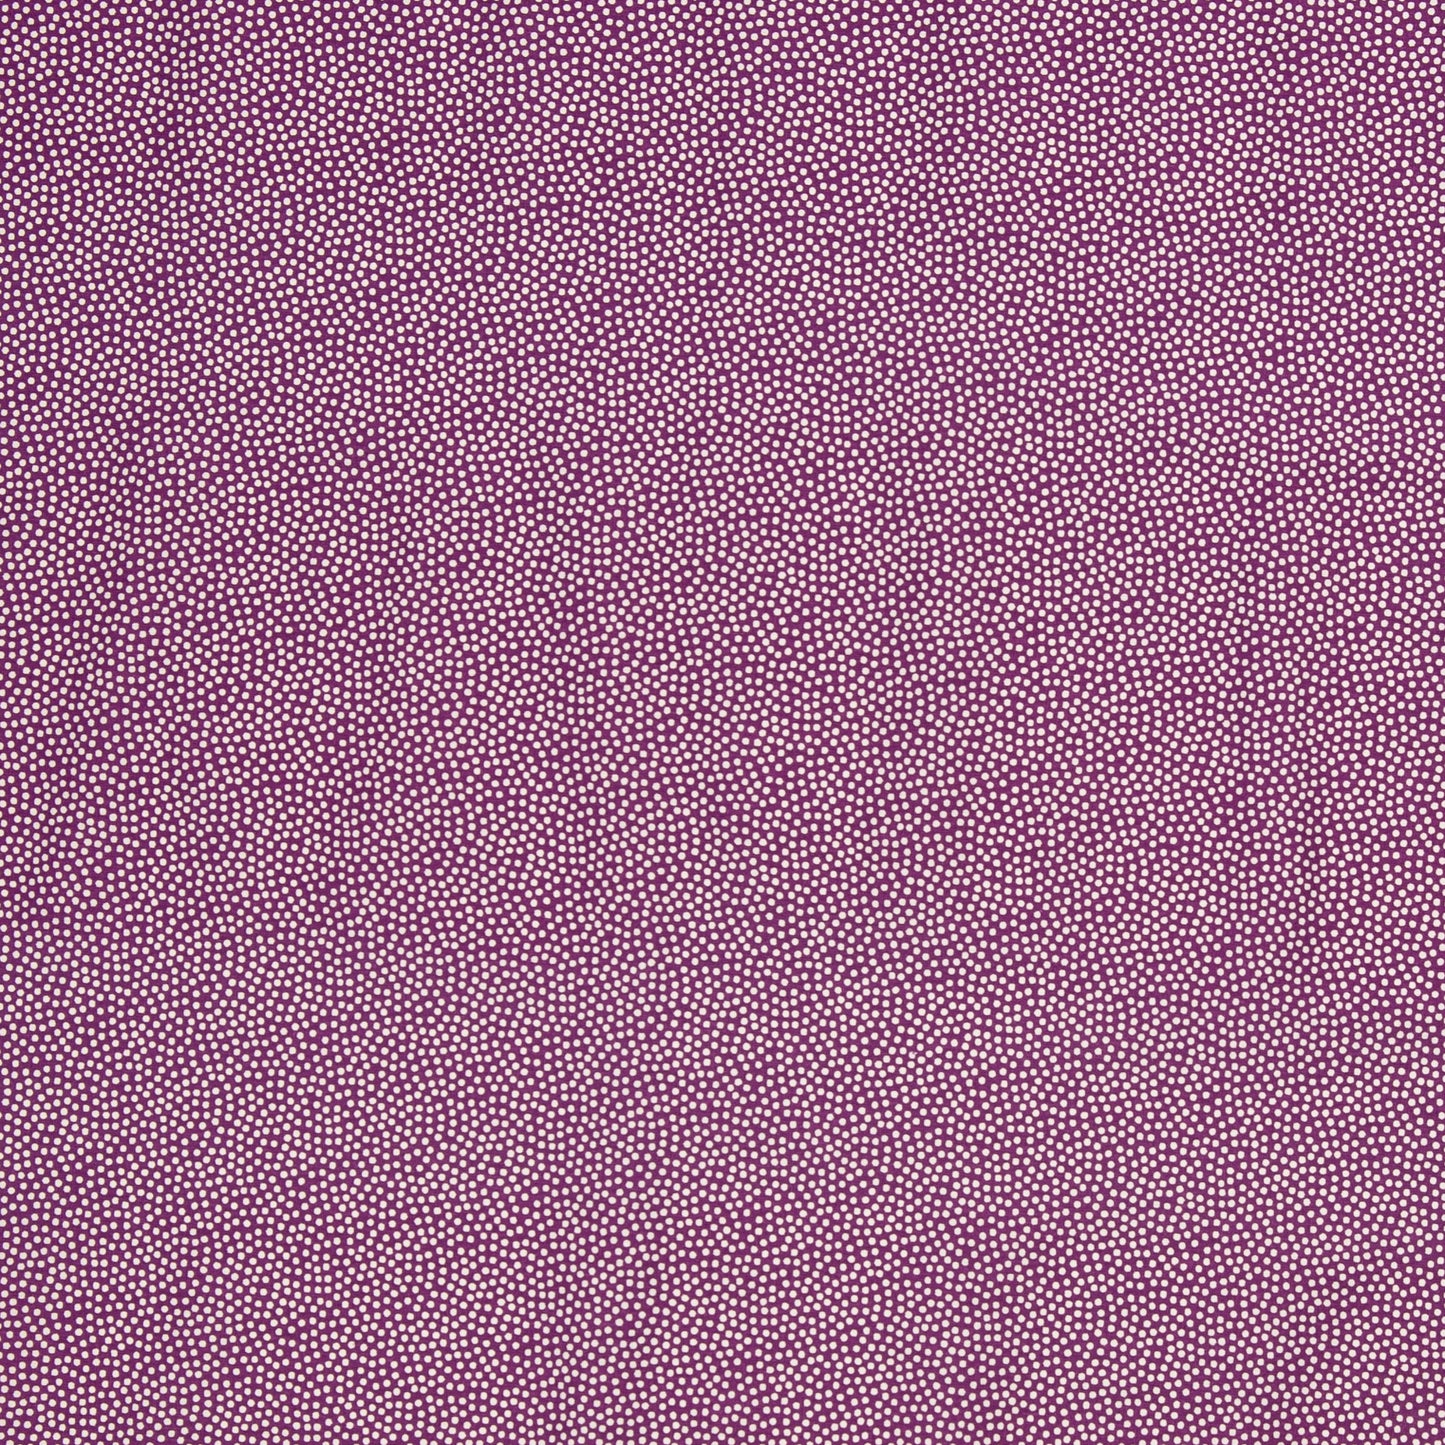 Baumwolle Punkte Dotty weiß violett